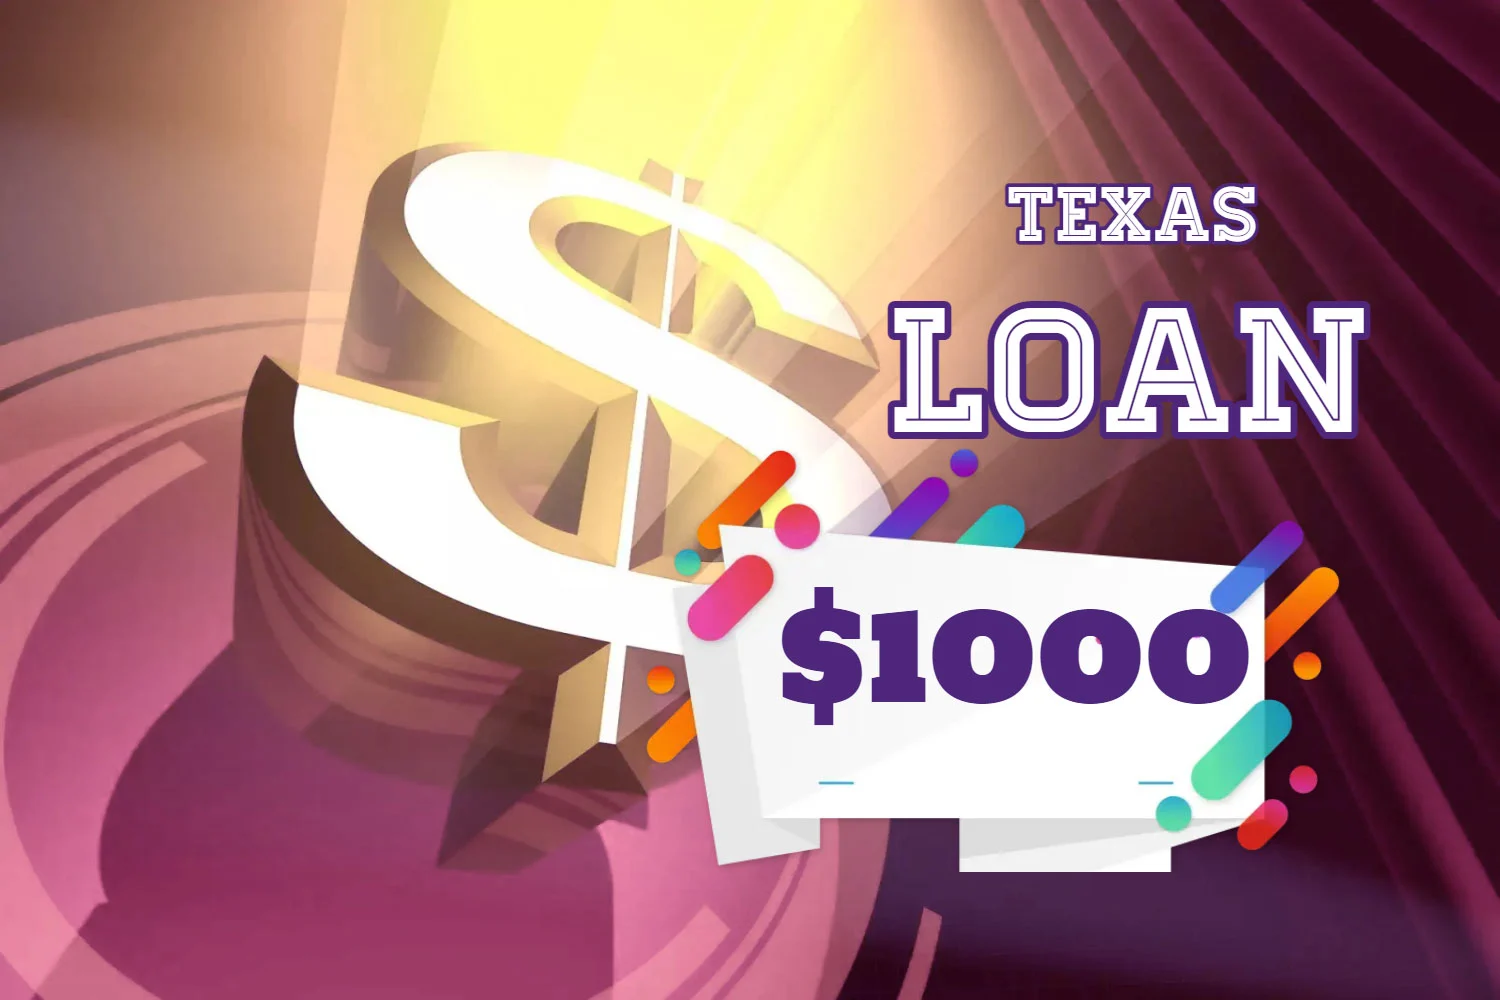 $1000 loan in Texas online